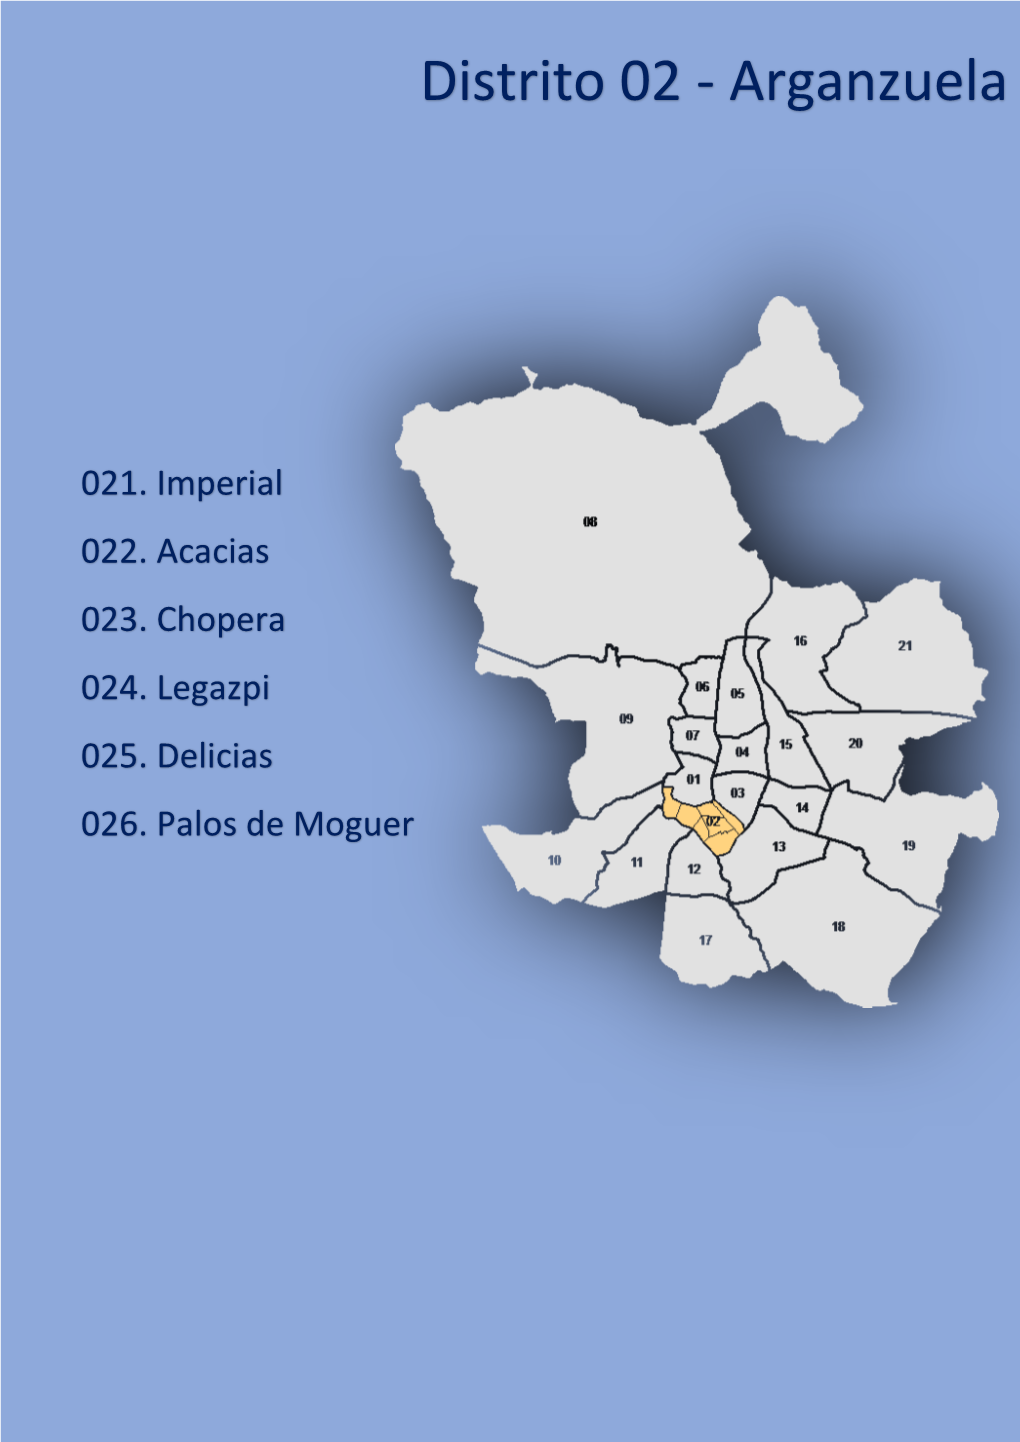 Distrito 02 - Arganzuela